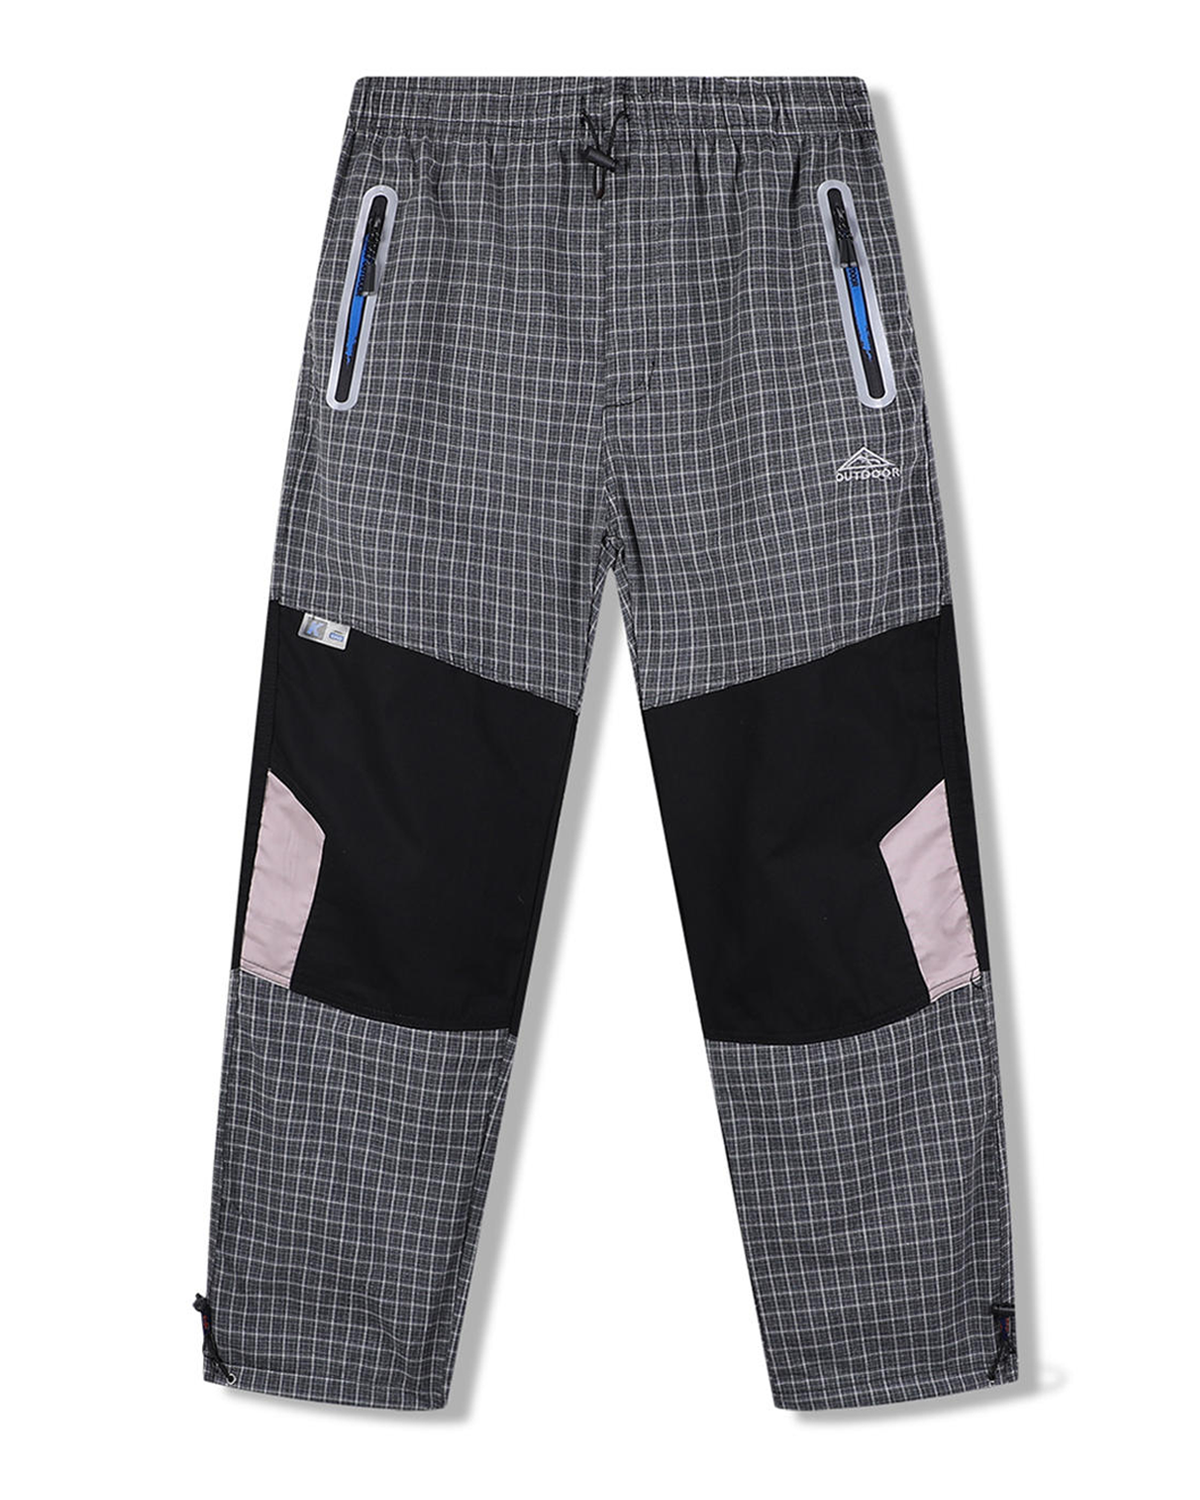 Pánské plátěné kalhoty - KUGO FK7610, šedá / tyrkysové zipy Barva: Šedá, Velikost: XL